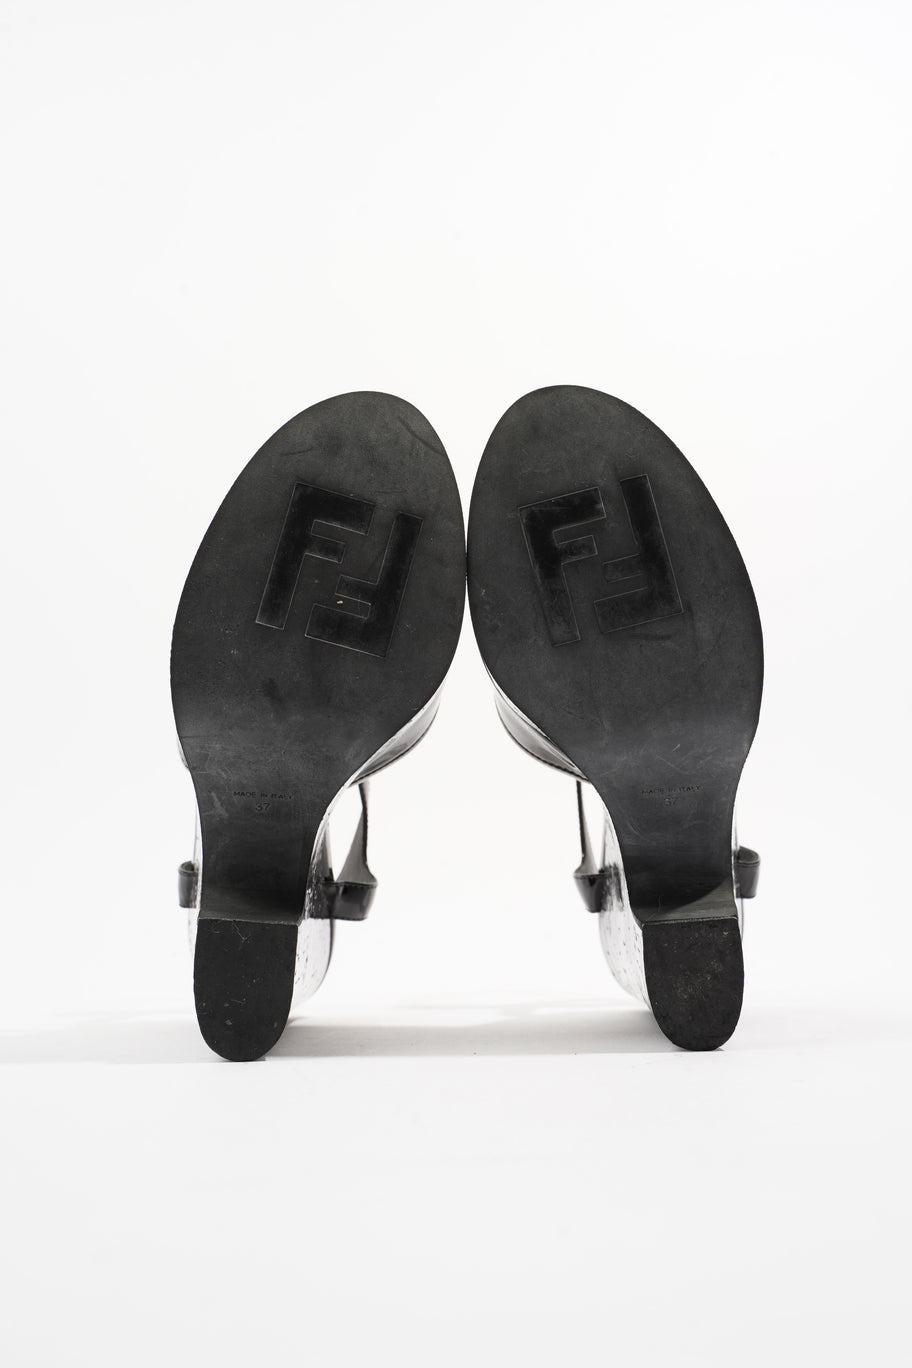 Wedge Sandal 140 Black Patent Leather EU 37 UK 4 Image 7